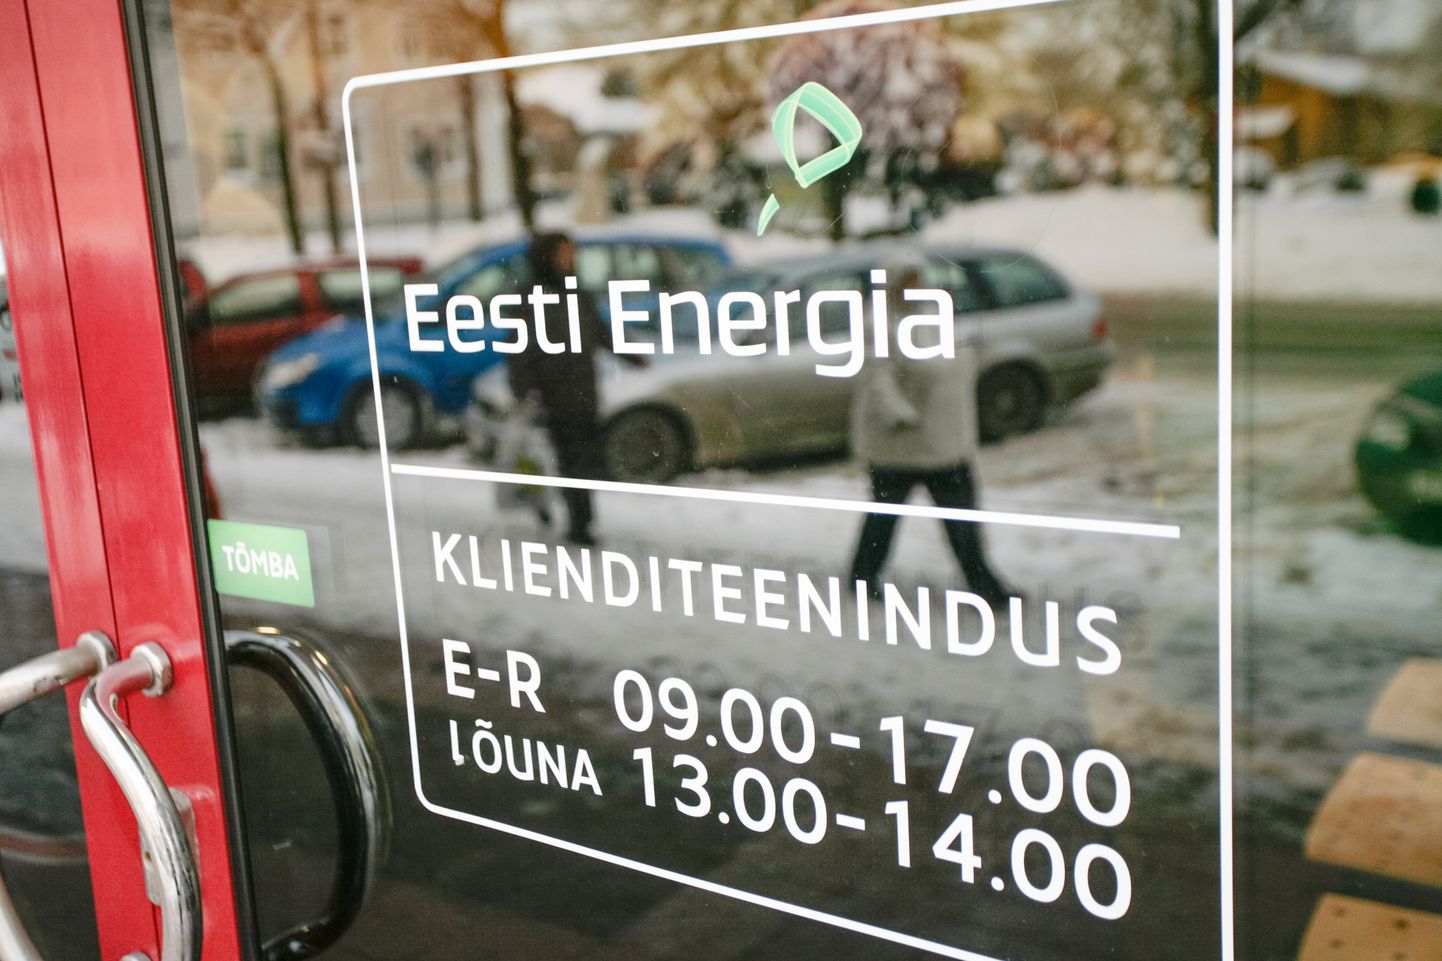 Eesti Energia leppis pankadega kokku, et suure laenu intressimäär hoitakse saladuses